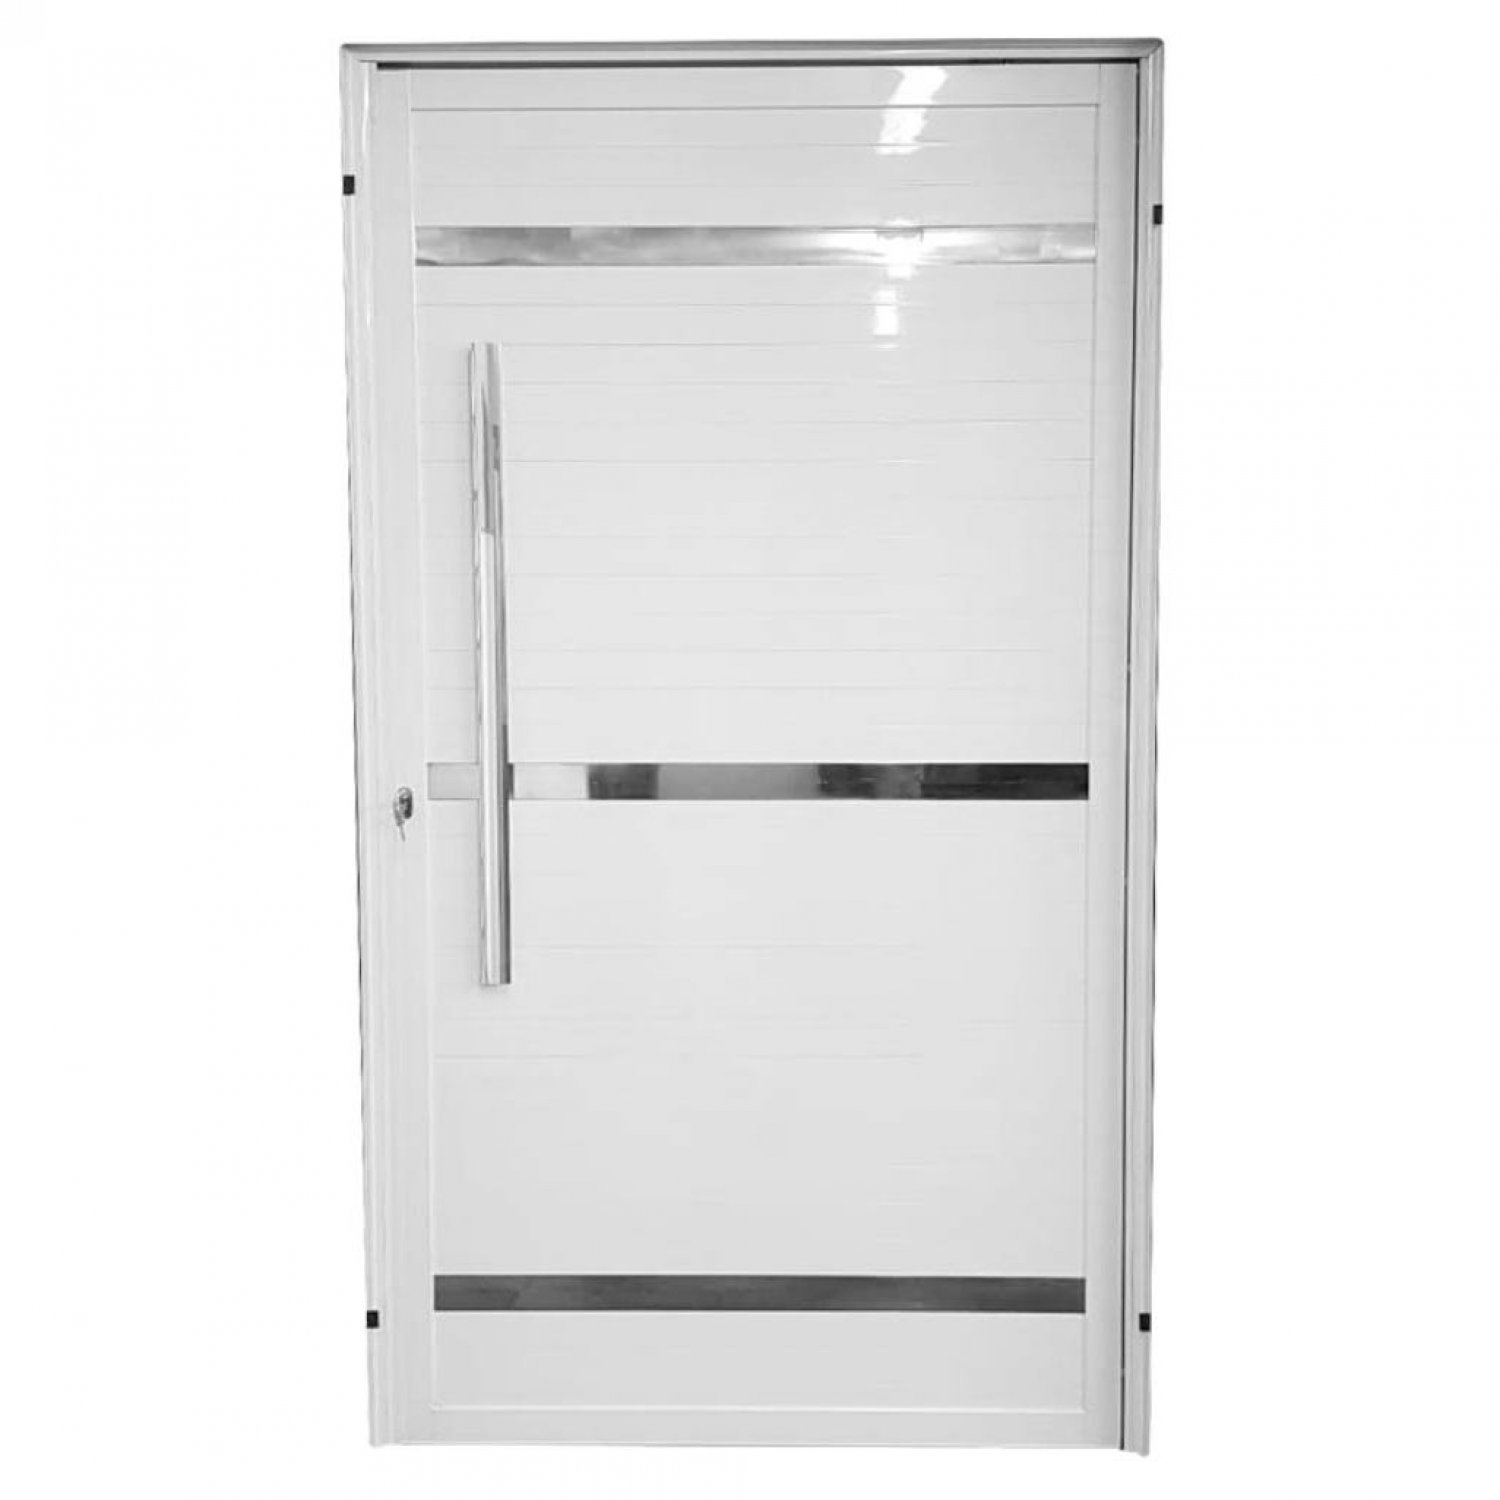 Porta de Aluminio Pivotante Branca com Frisos 220x110 MGM - 2